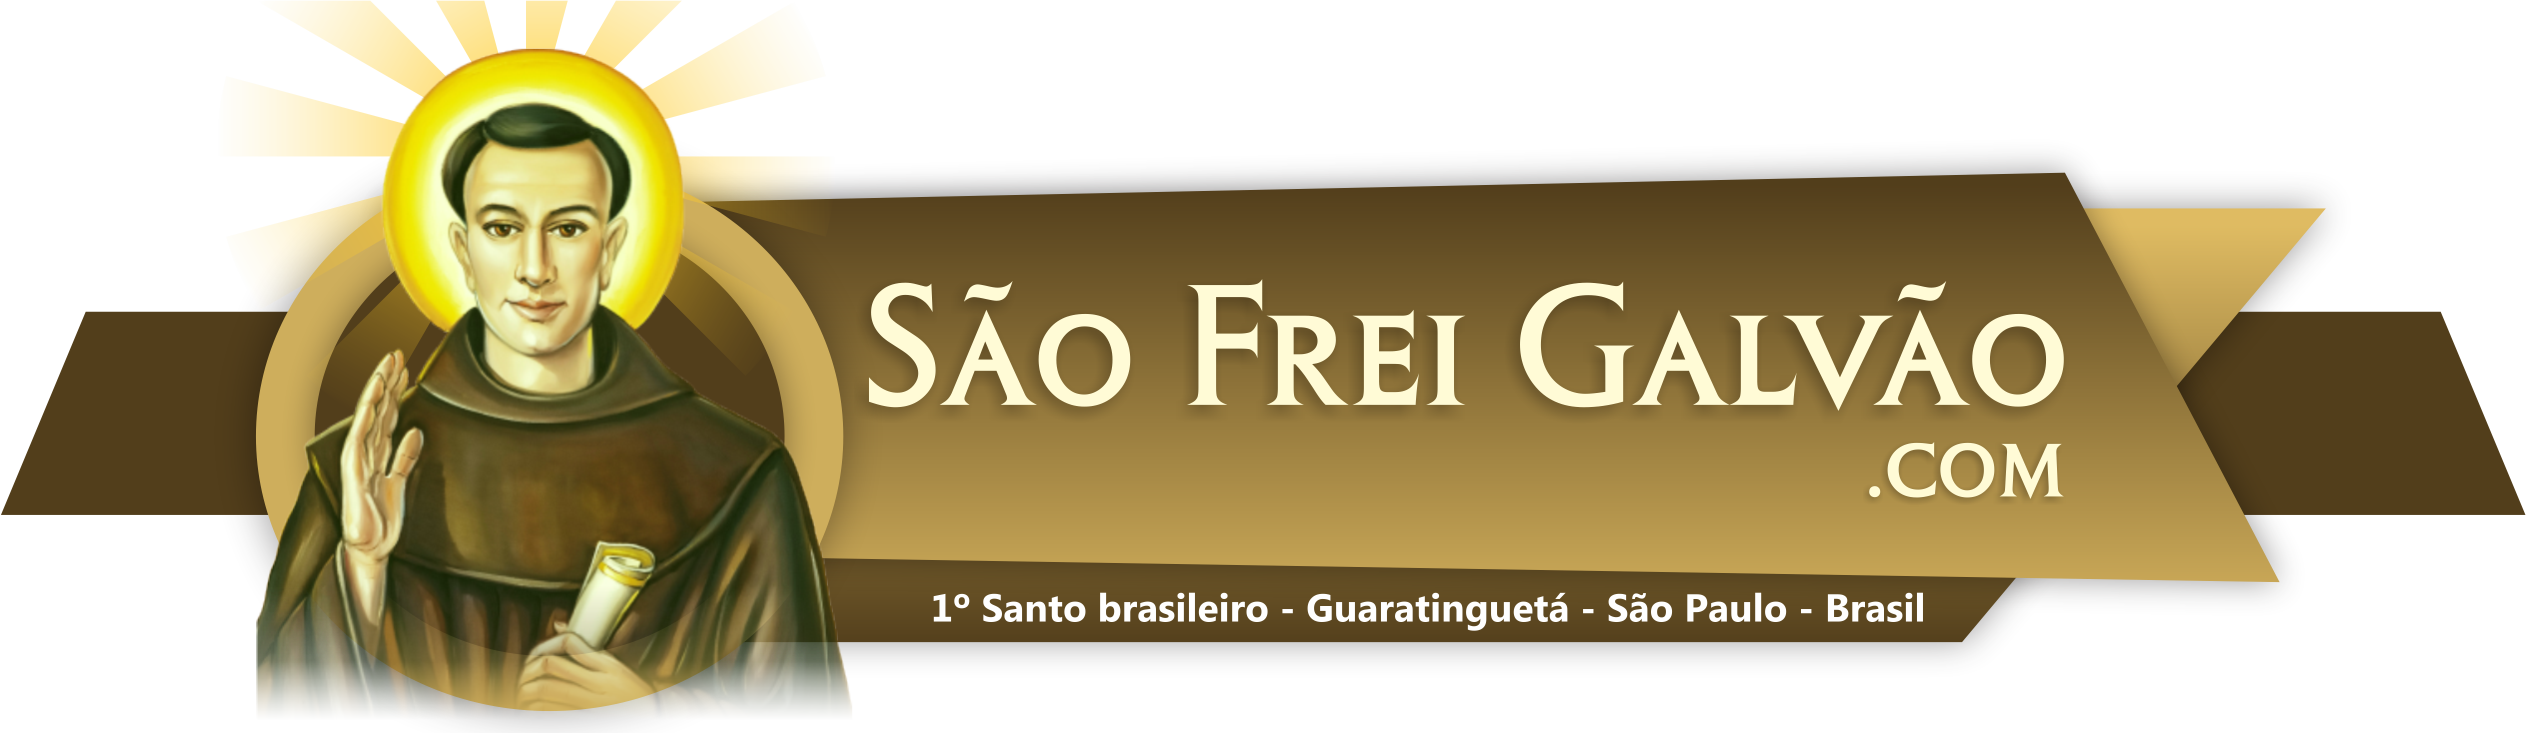 São Frei Galvão, 1º Santo nascido no Brasil